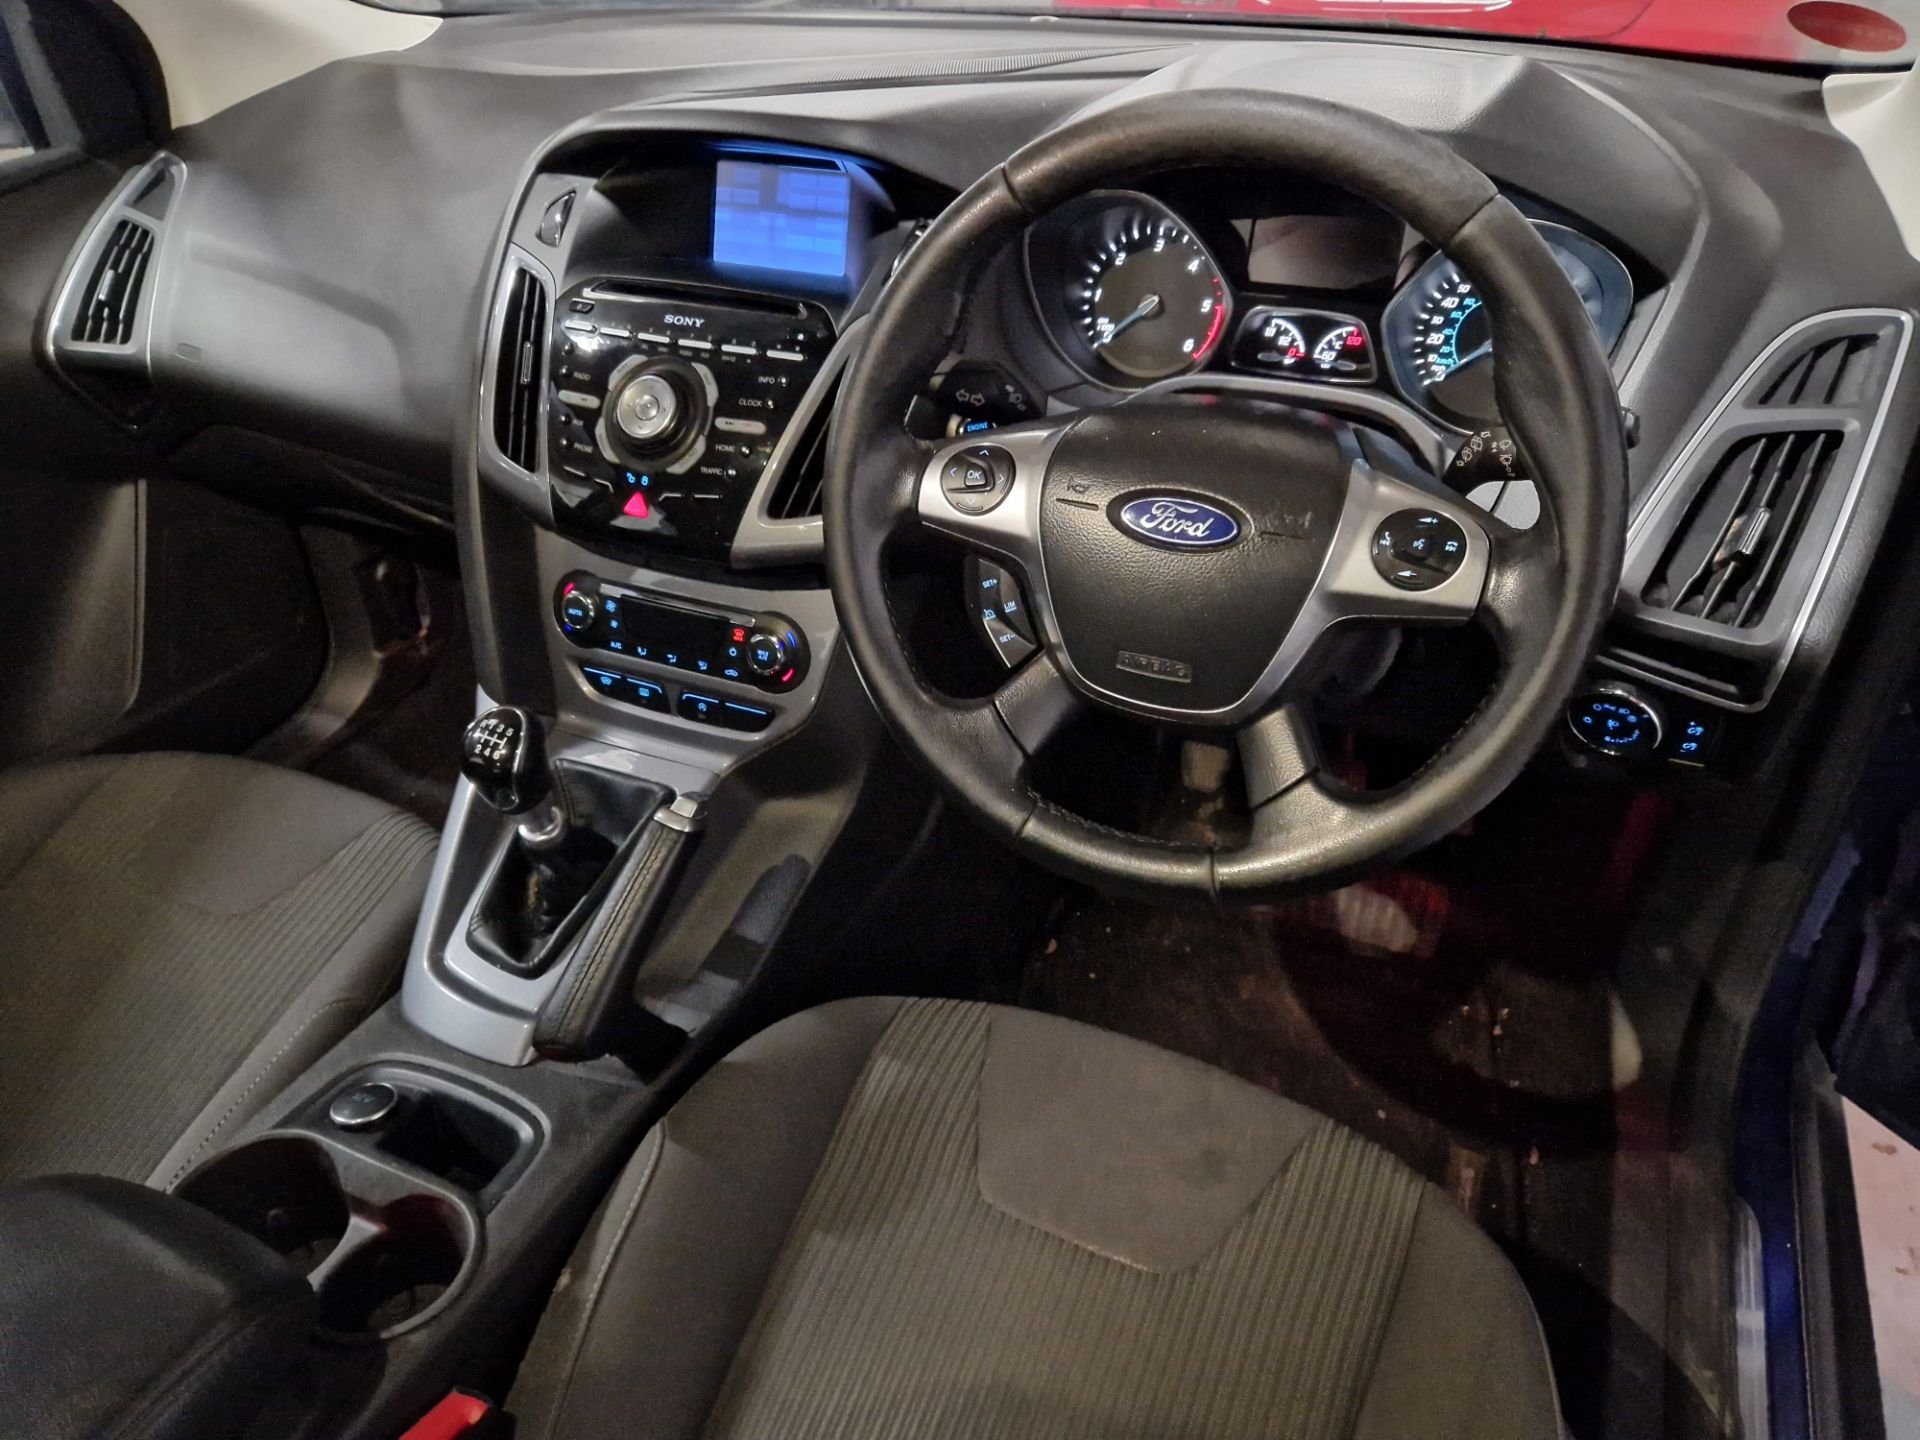 Ford Focus 1.6 TDCi 115 Titanium Navigator 5dr Diesel Hatchback, Registration No. BG63 BCY, Mileage: - Image 6 of 8